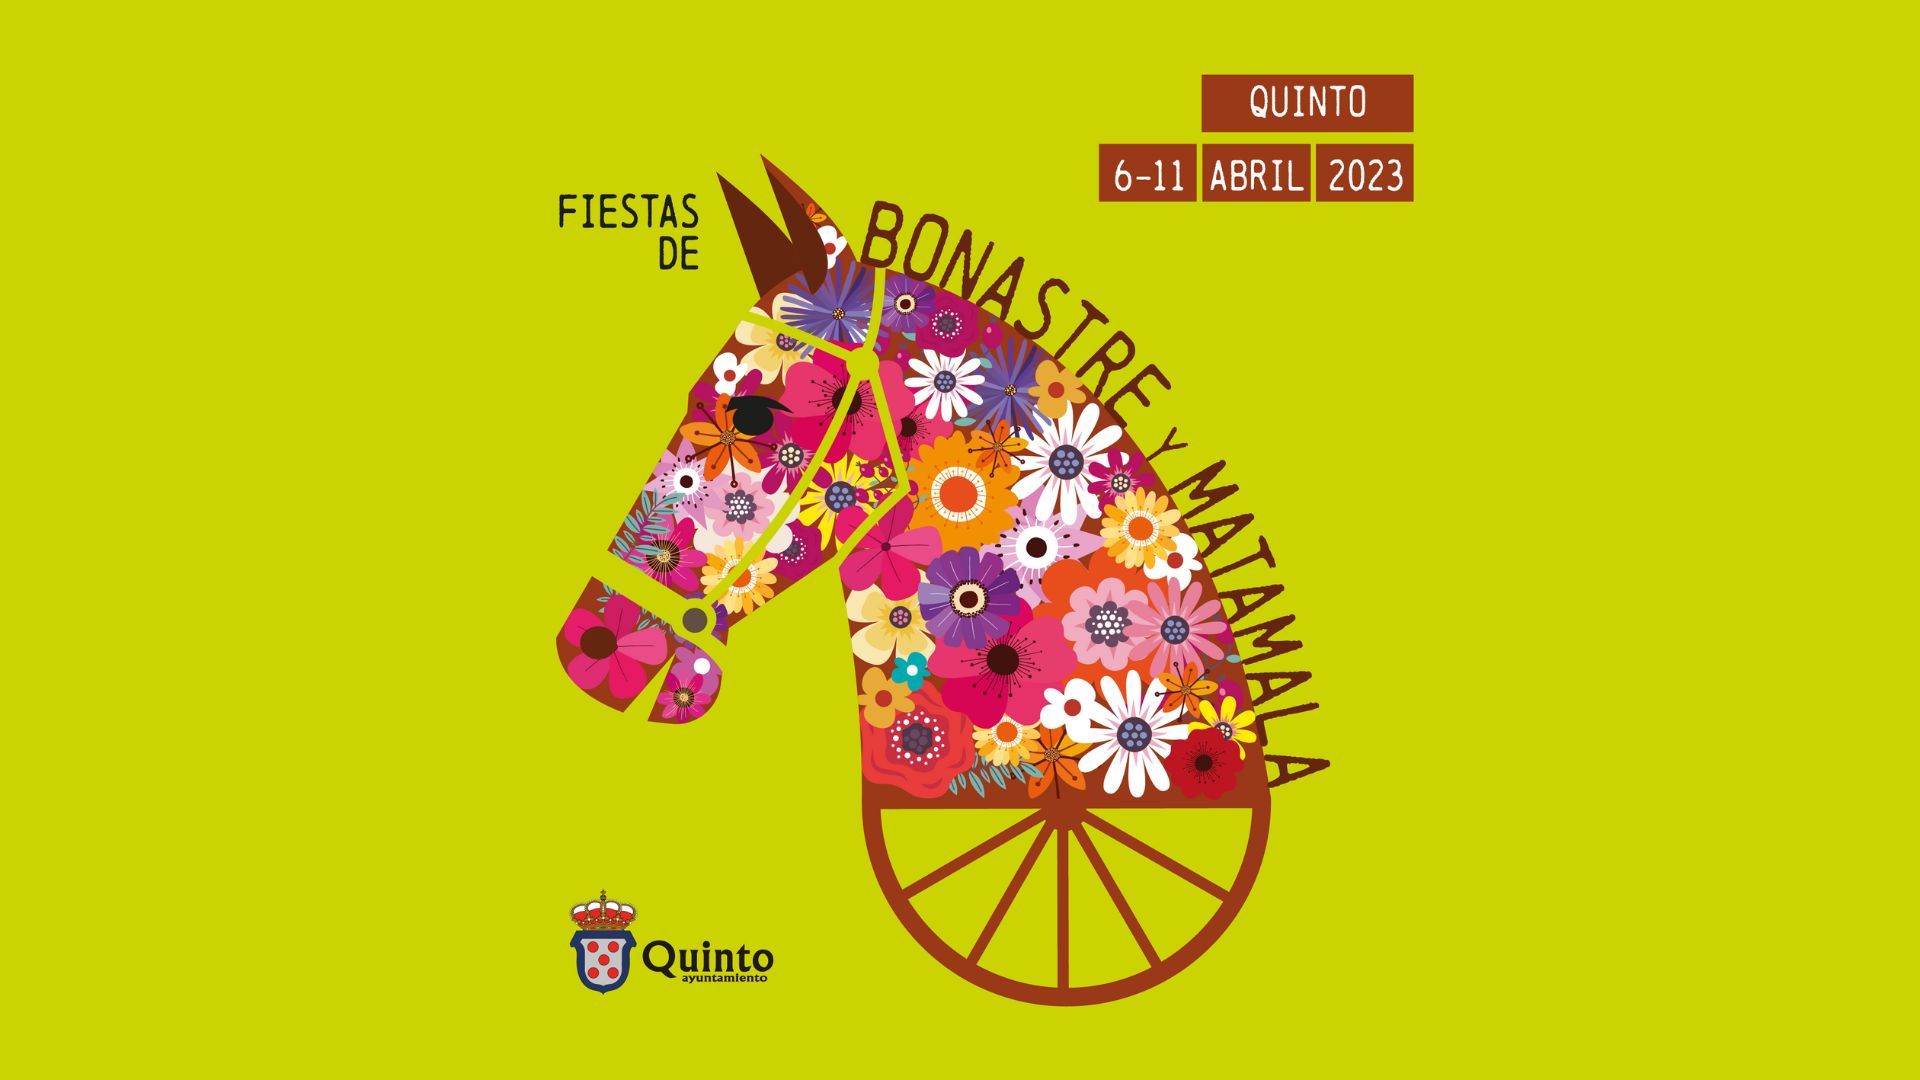 Fiestas de Bonastre y Matamala 6-11 Abril 2023